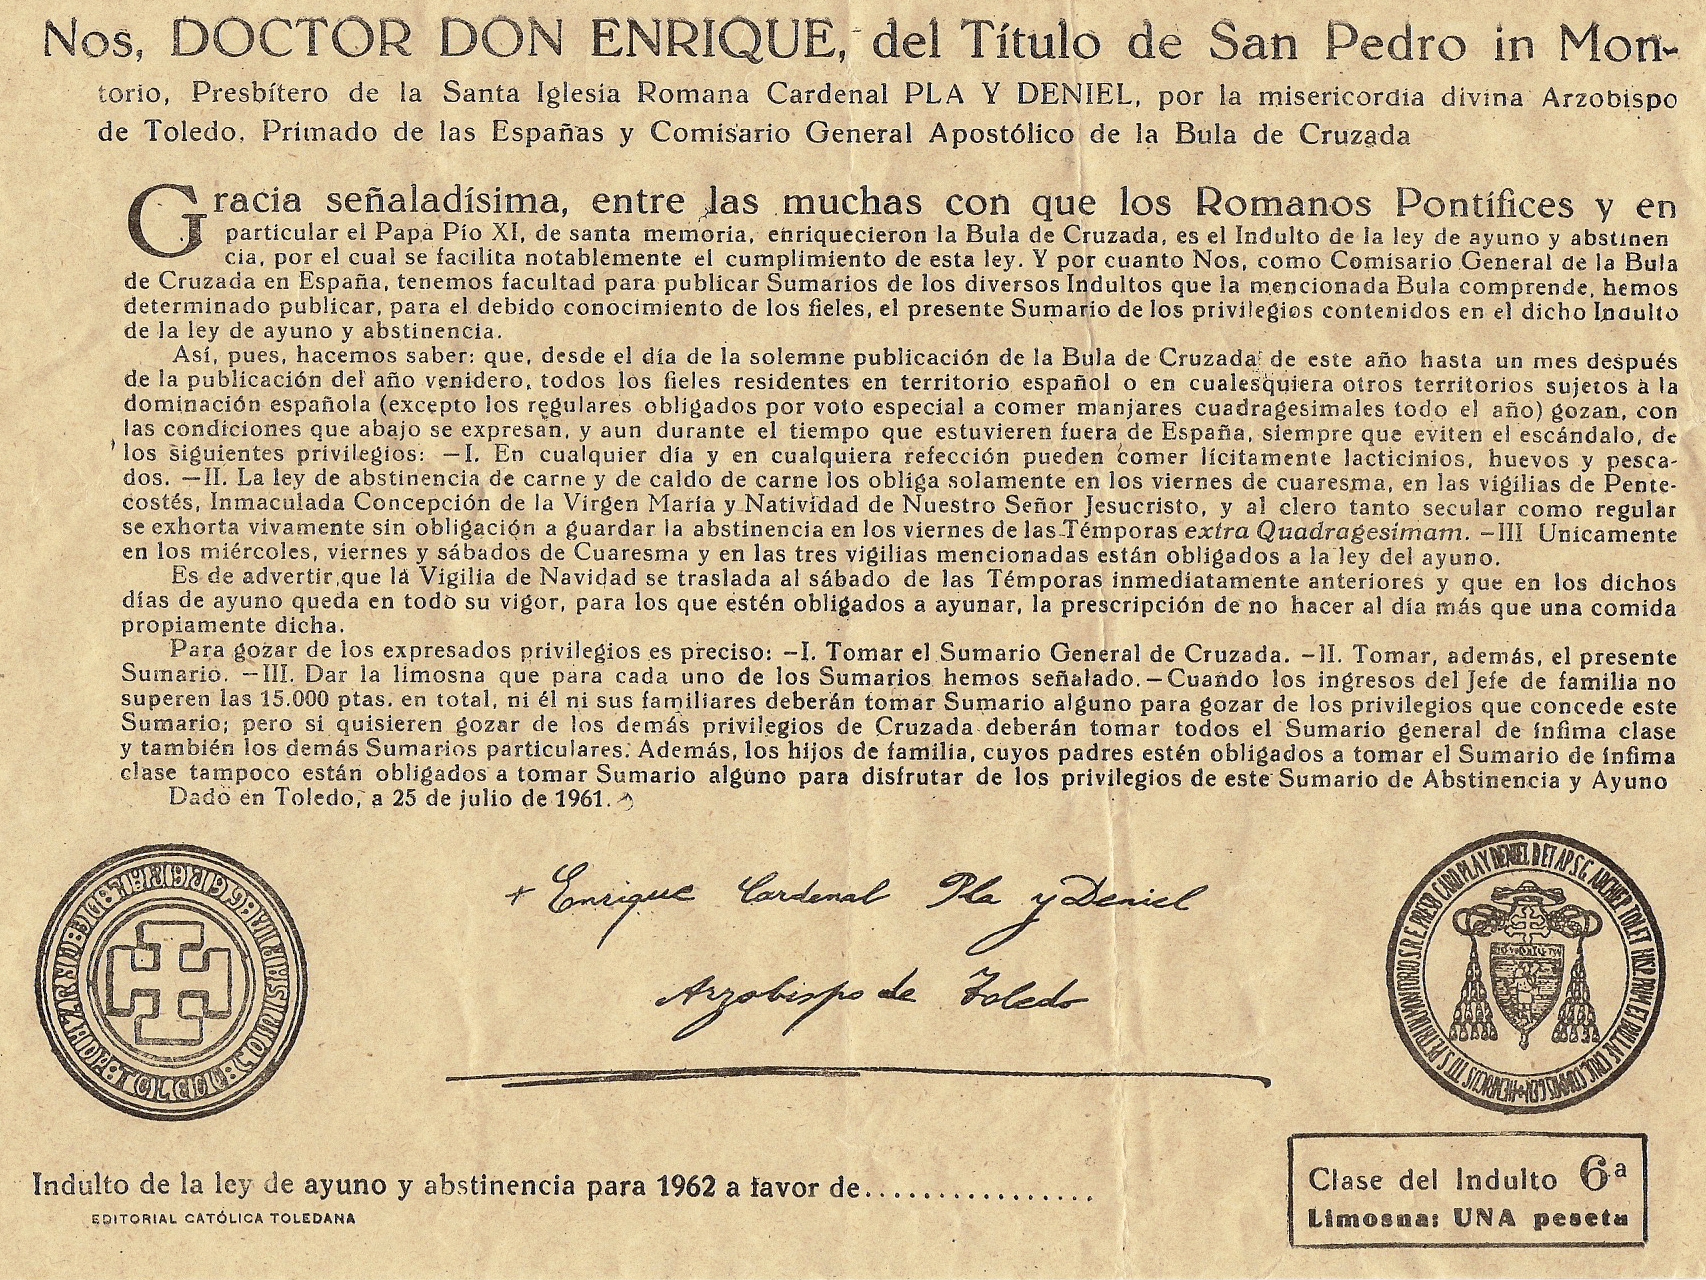 Indulto de ayuno y abstinencia, 1962. Hemeroteca de Madrigal de las Altas Torres